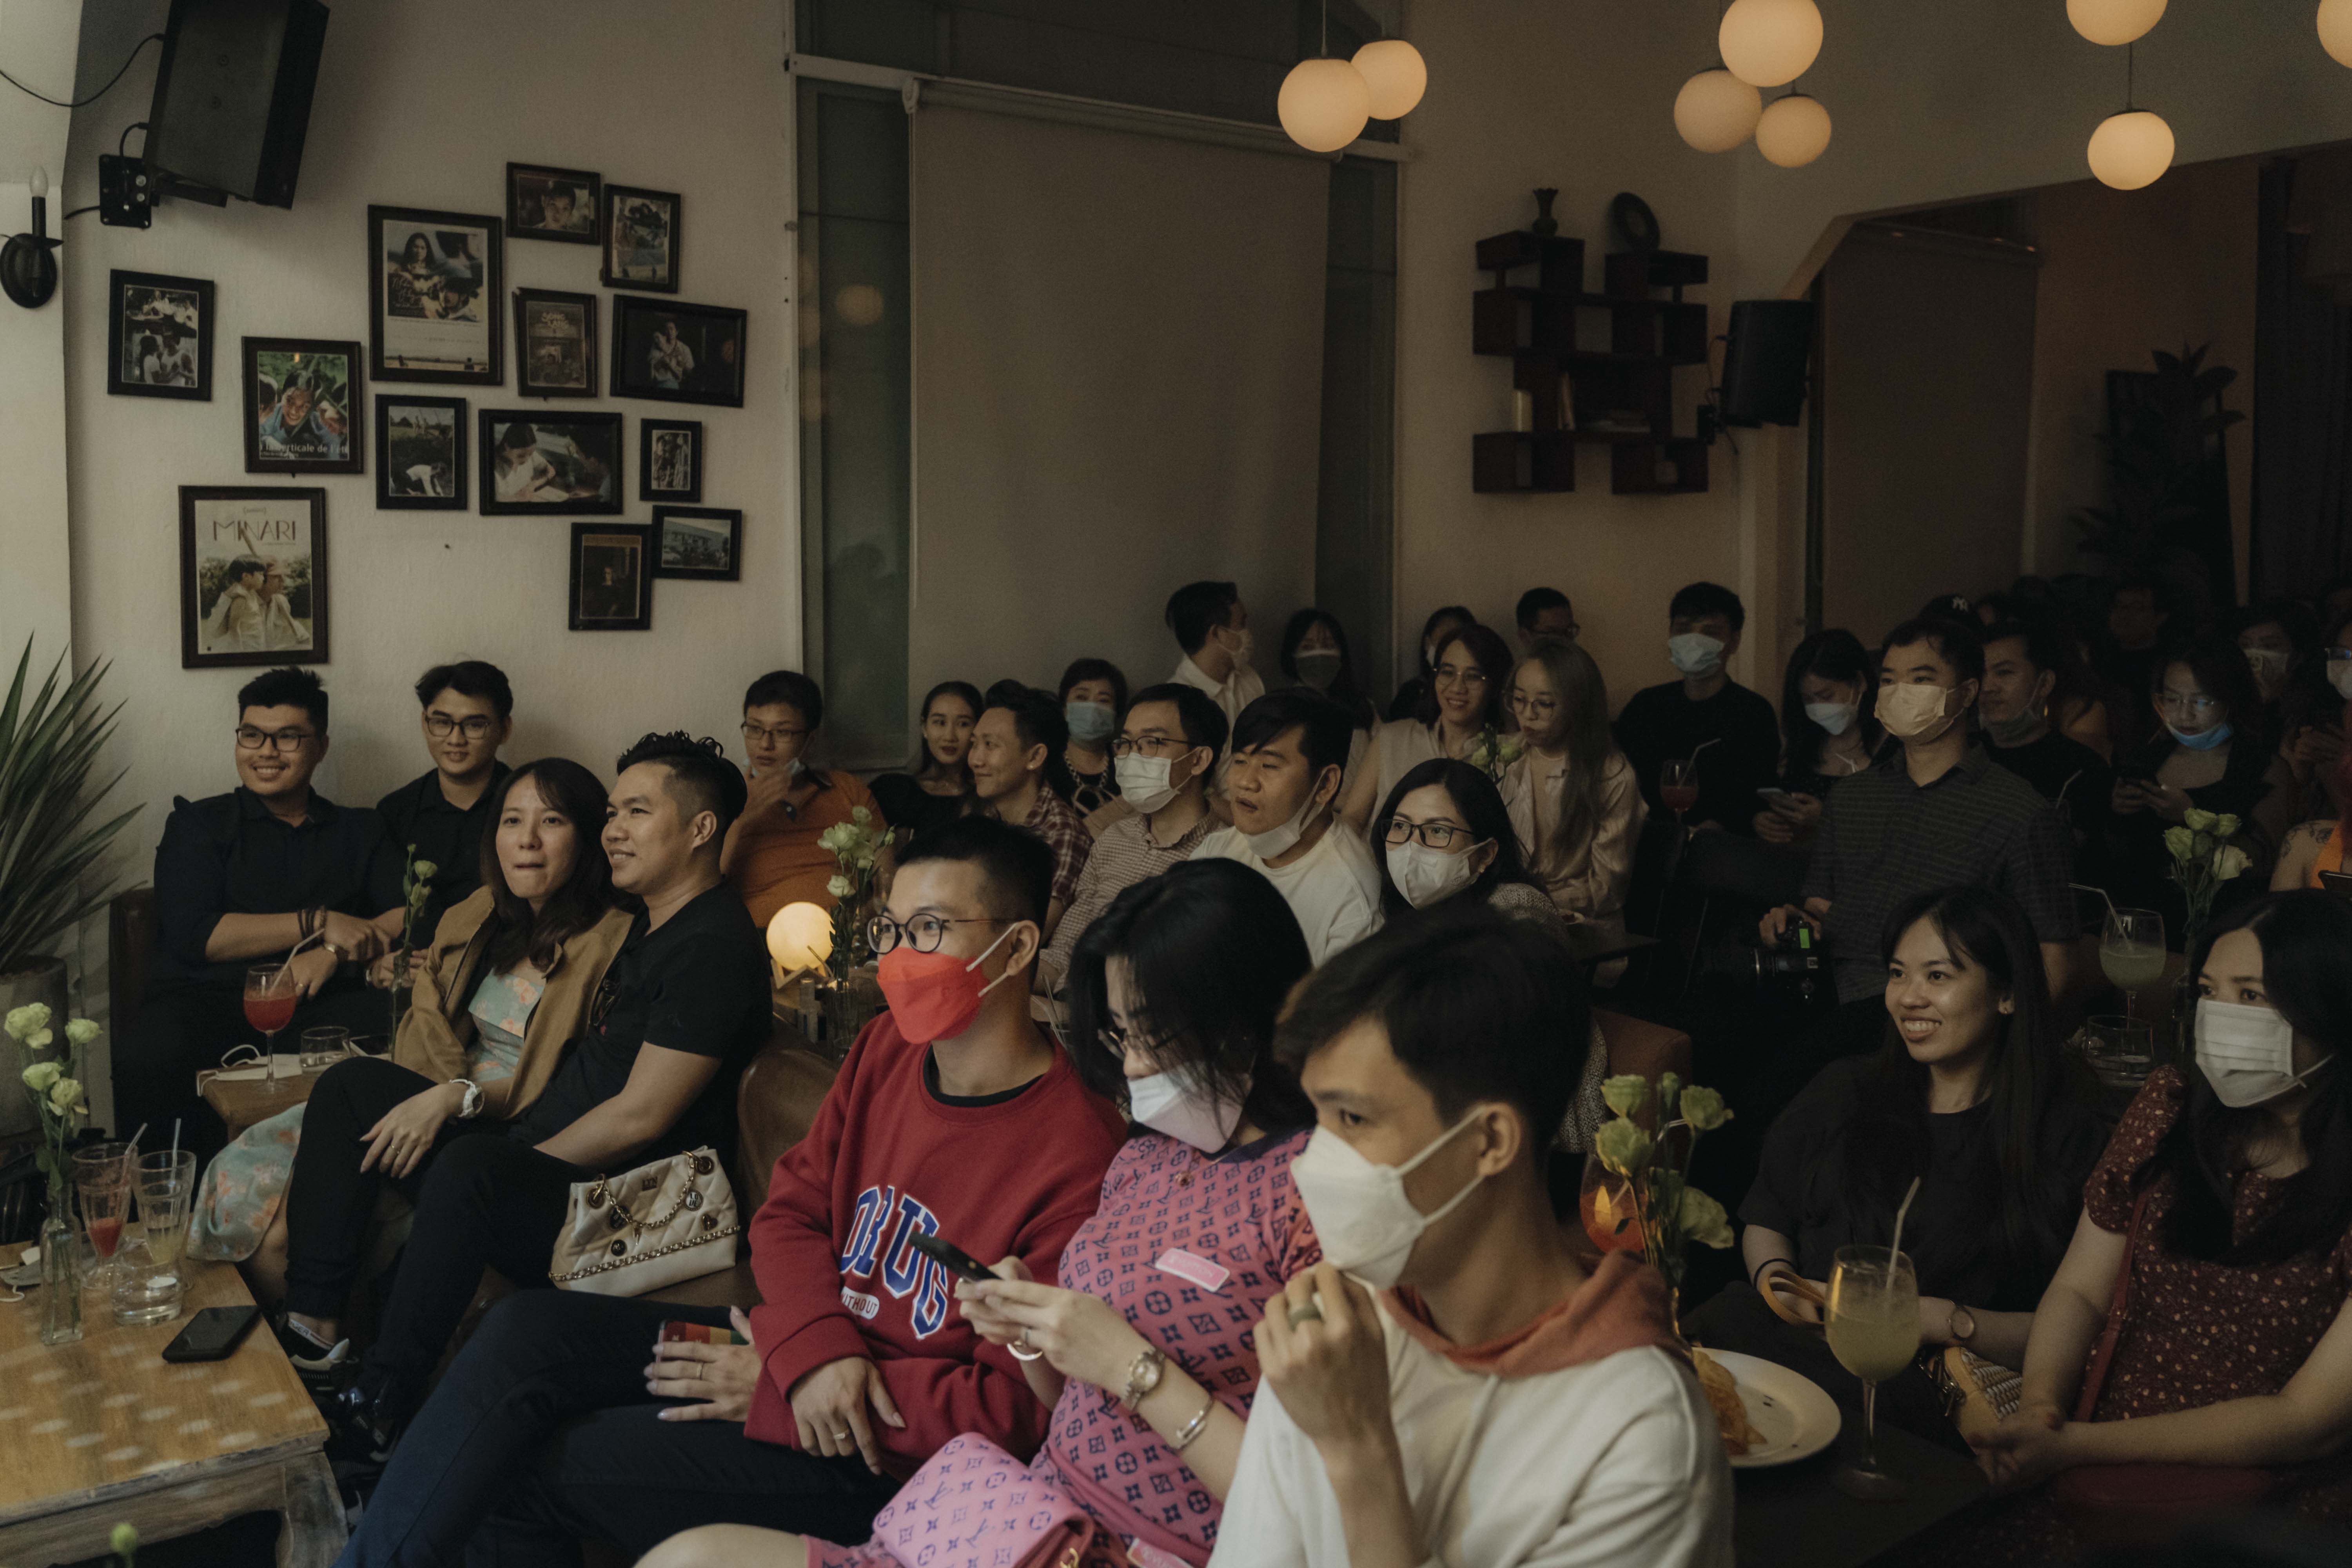 Phòng trà Sài Gòn đầu tiên mở lại sau dịch - Văn Mai Hương cháy vé 3 đêm liền - ảnh 4